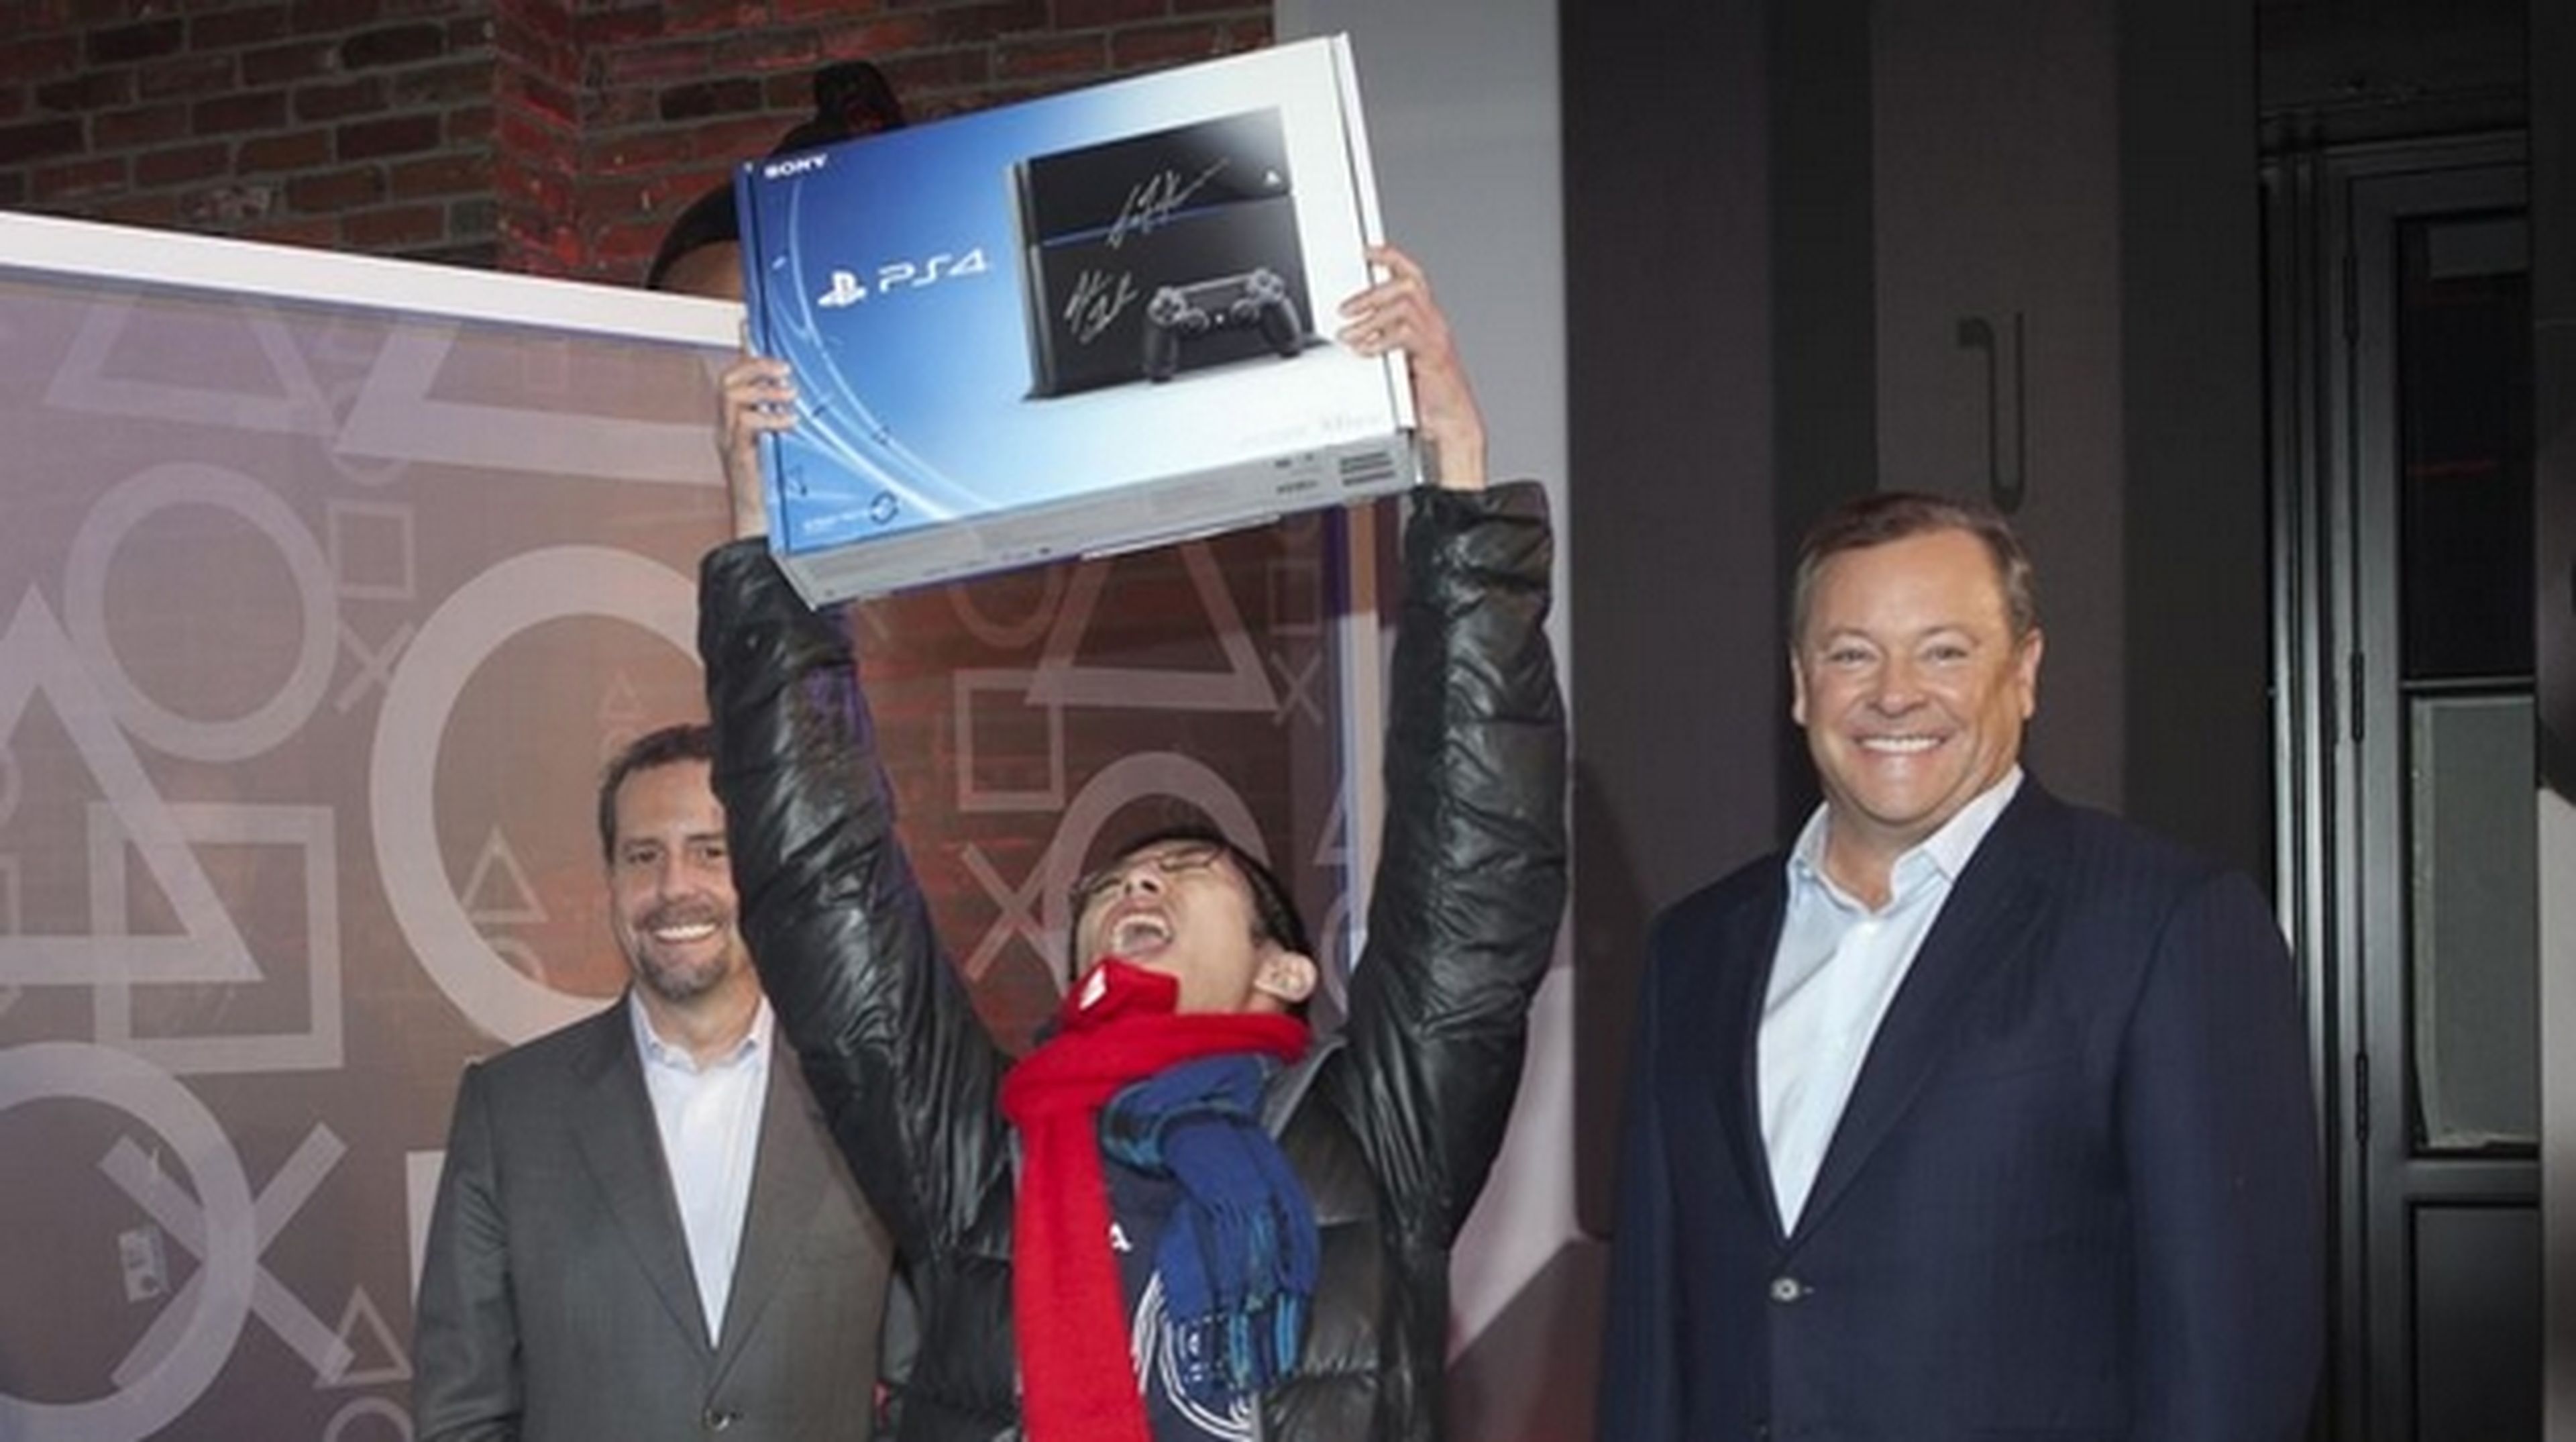 PlayStation 4 ya a la venta en USA. Análisis de los primeros juegos